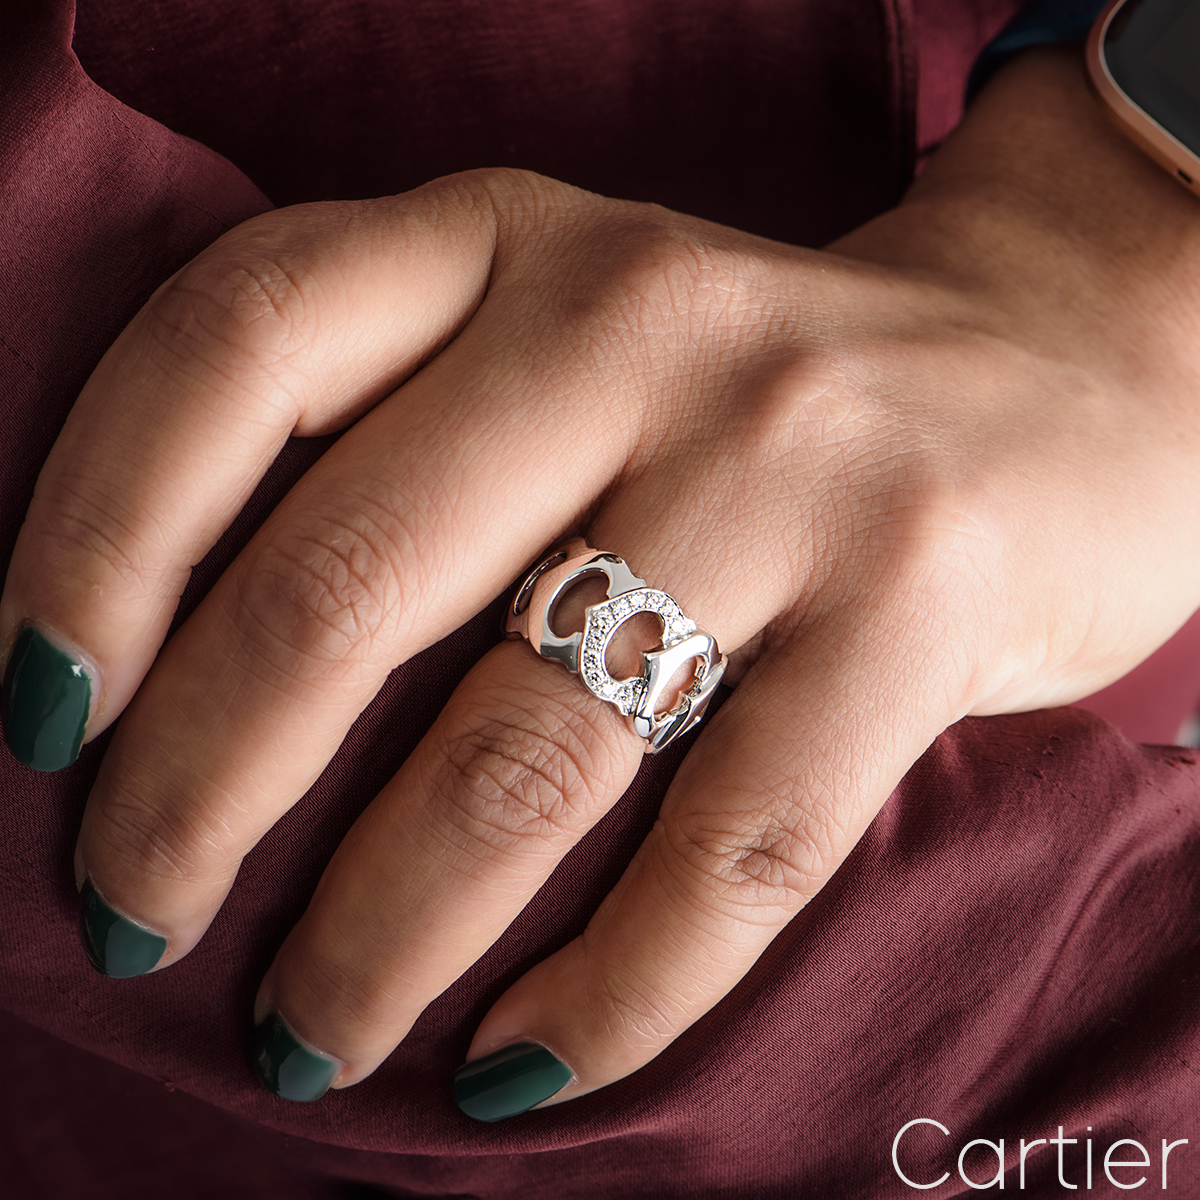 Cartier White Gold Diamond C De Cartier Ring